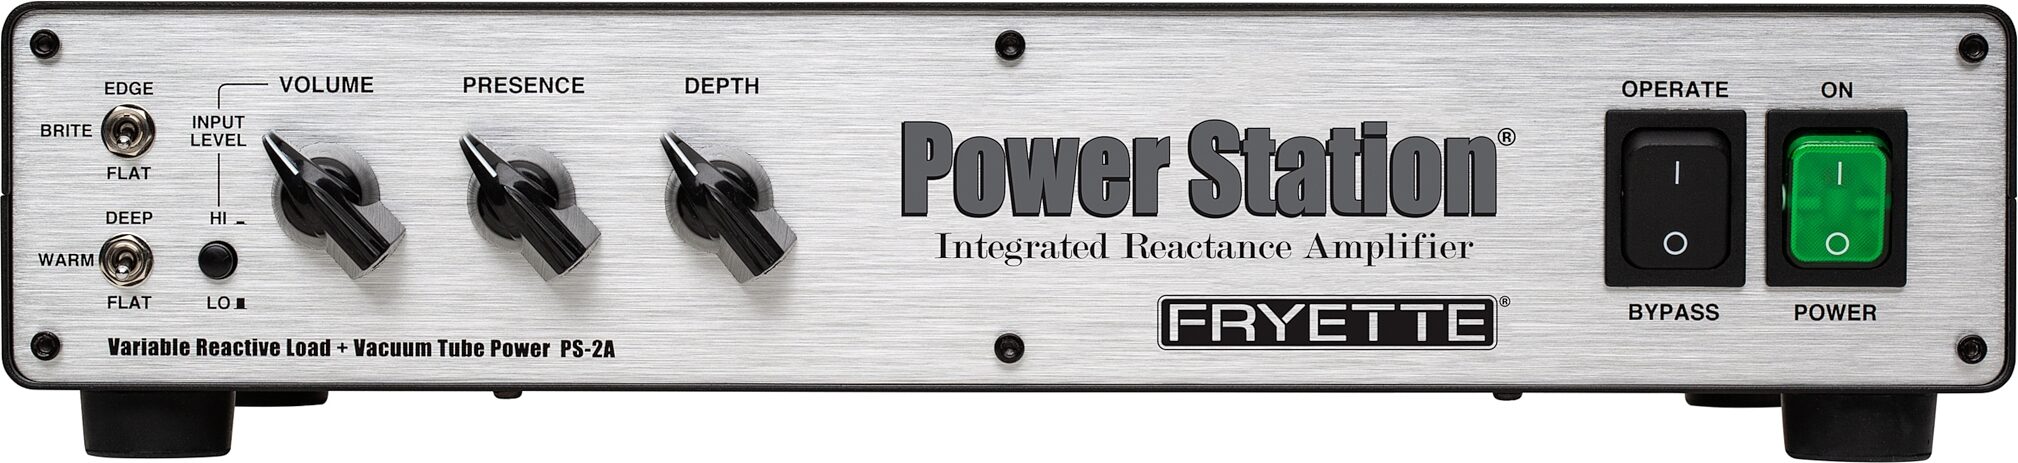 Fryette PS-2A Power Station Integrated Reactance Amp v2